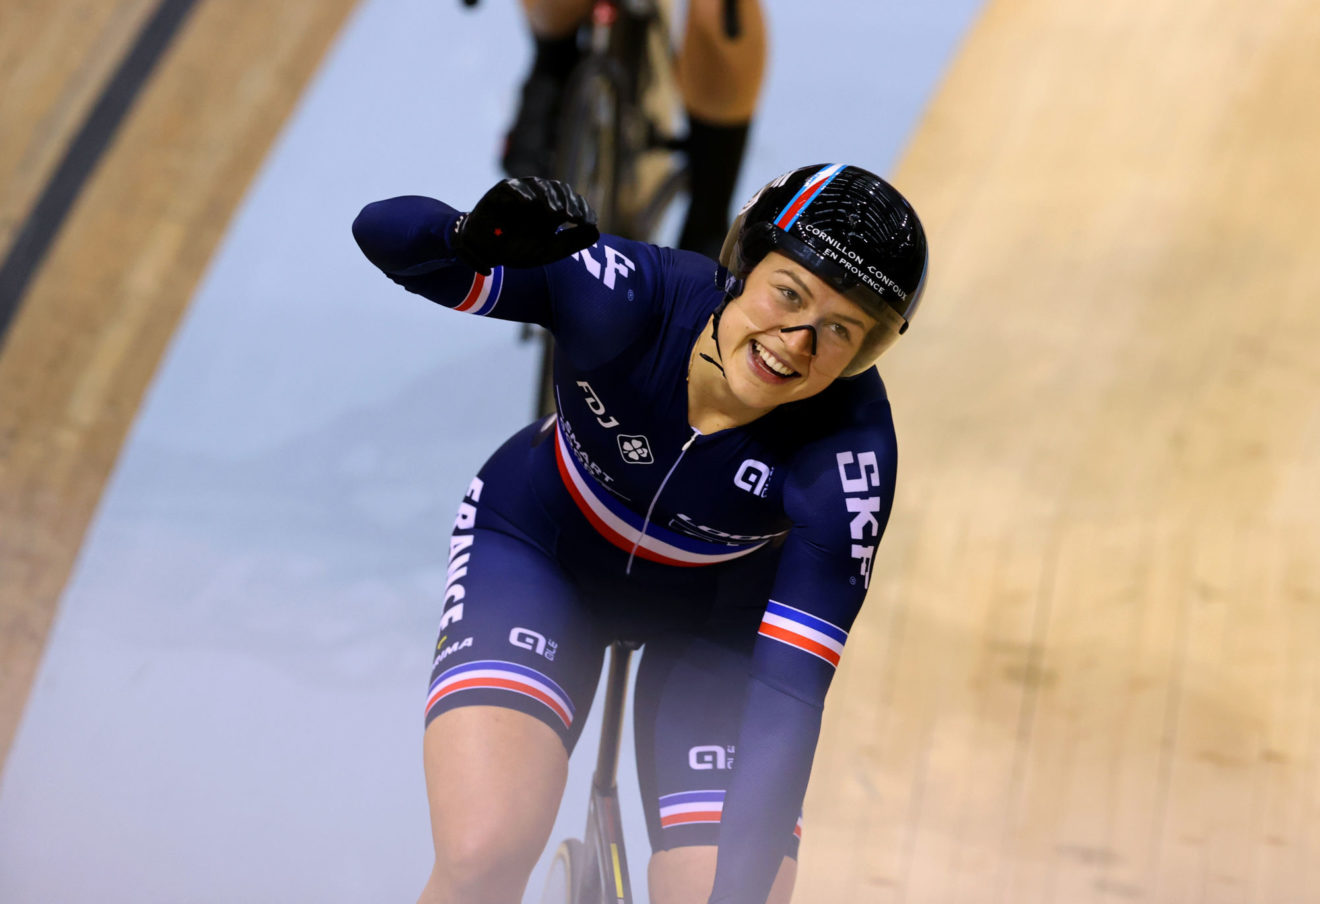 Cyclisme sur piste : Mathilde Gros médaillée d’or en vitesse individuelle